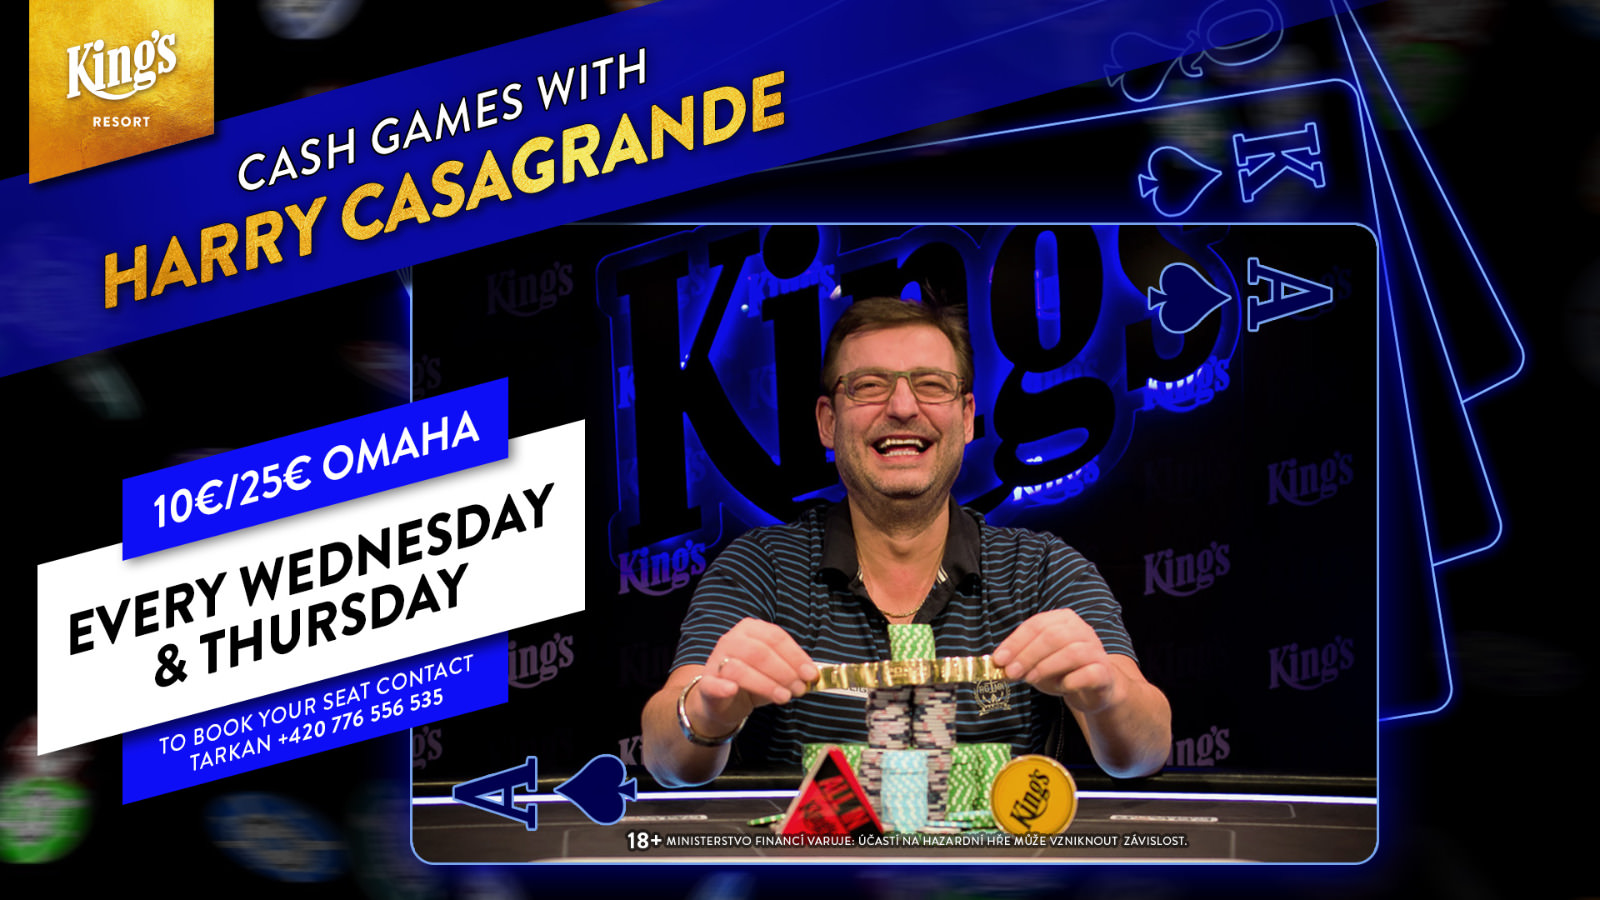 Harry Casagrande neuer Cash Game Host im Kings Hochgepokert